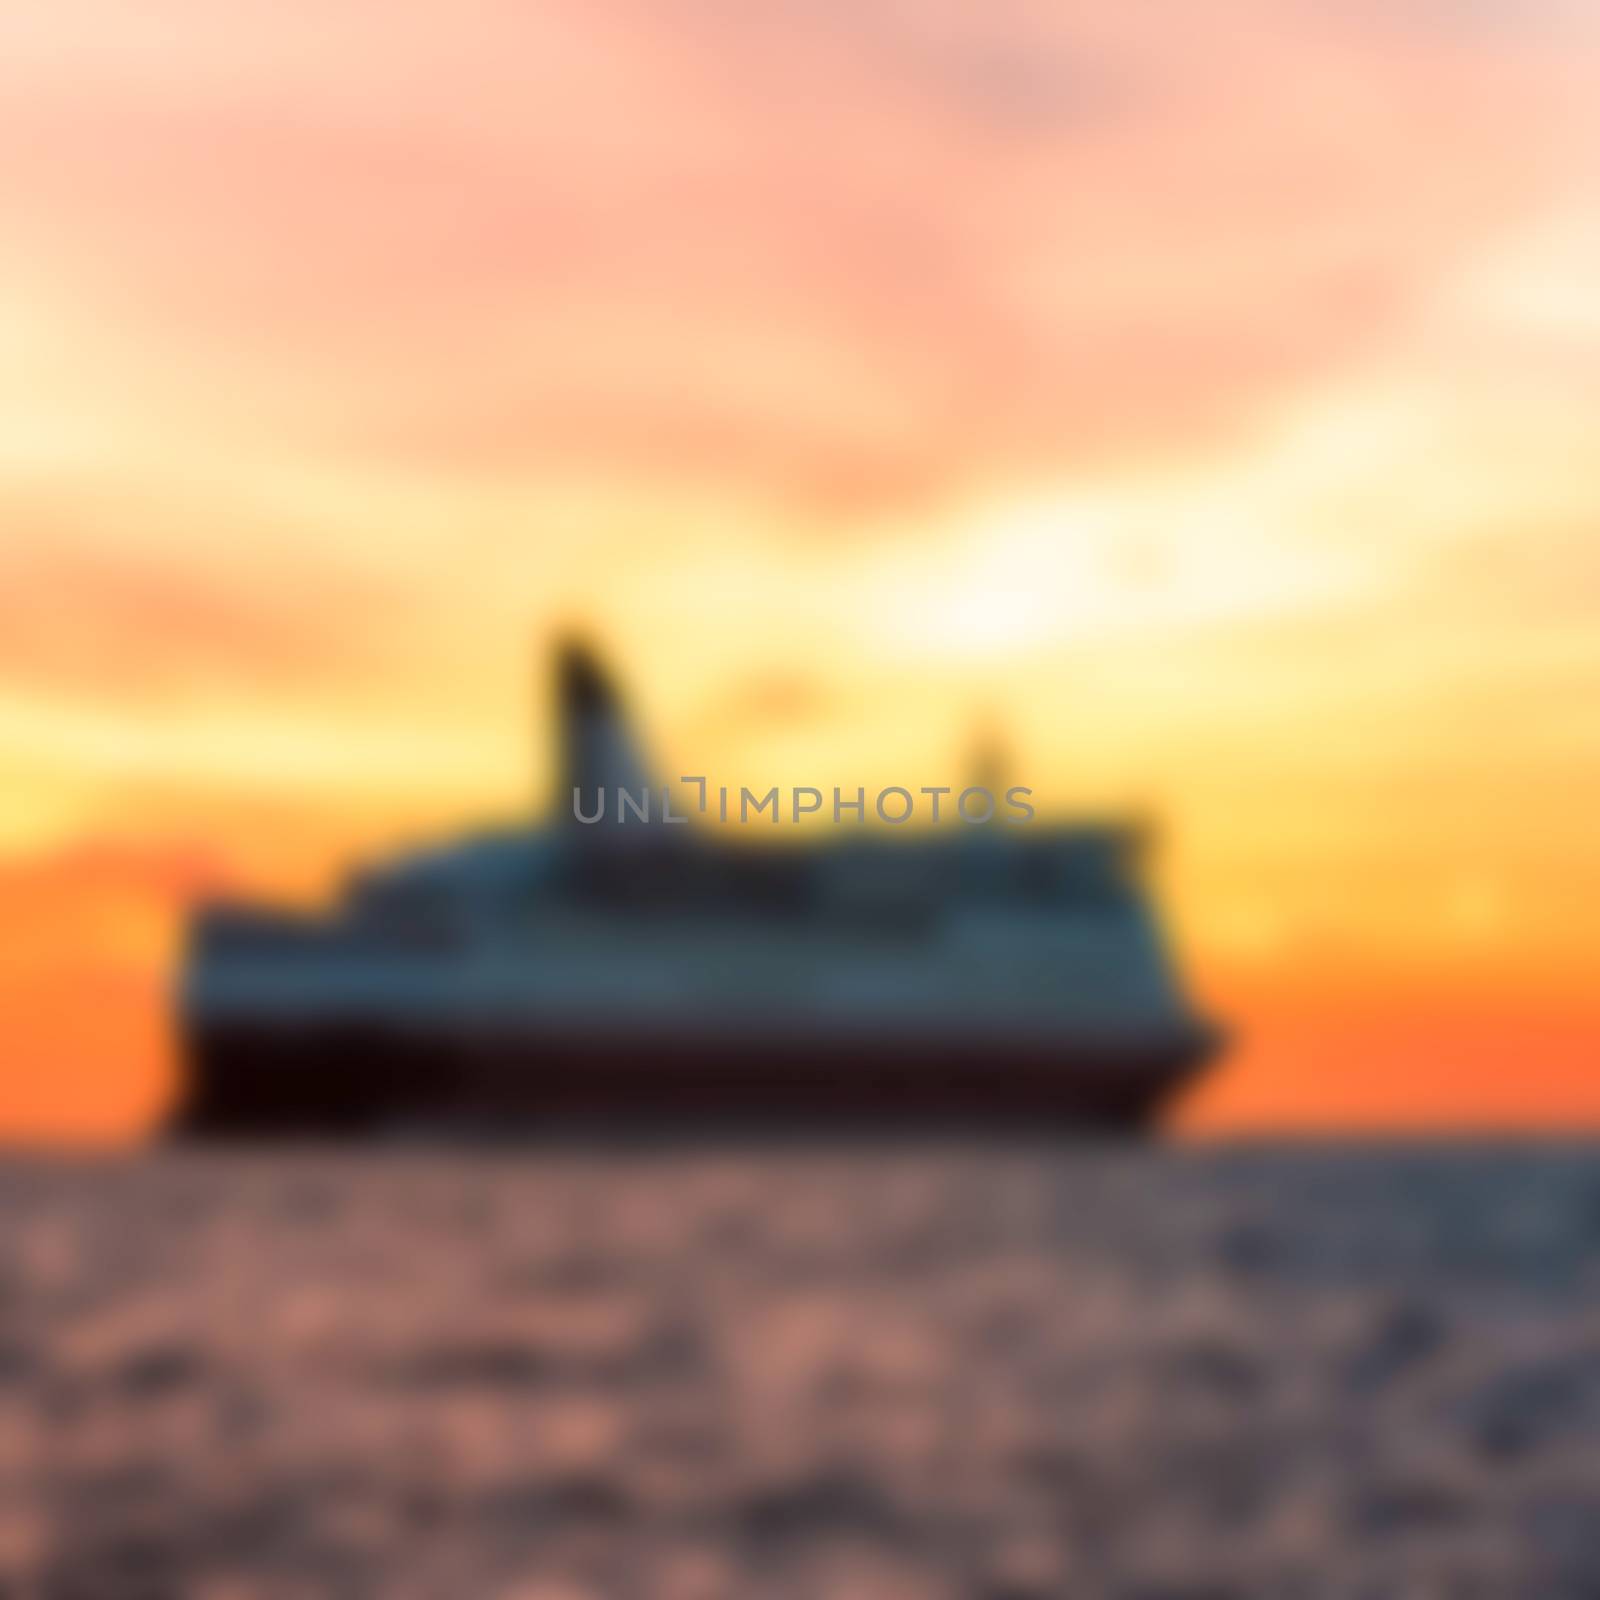 Passenger ship - blurred image by sengnsp